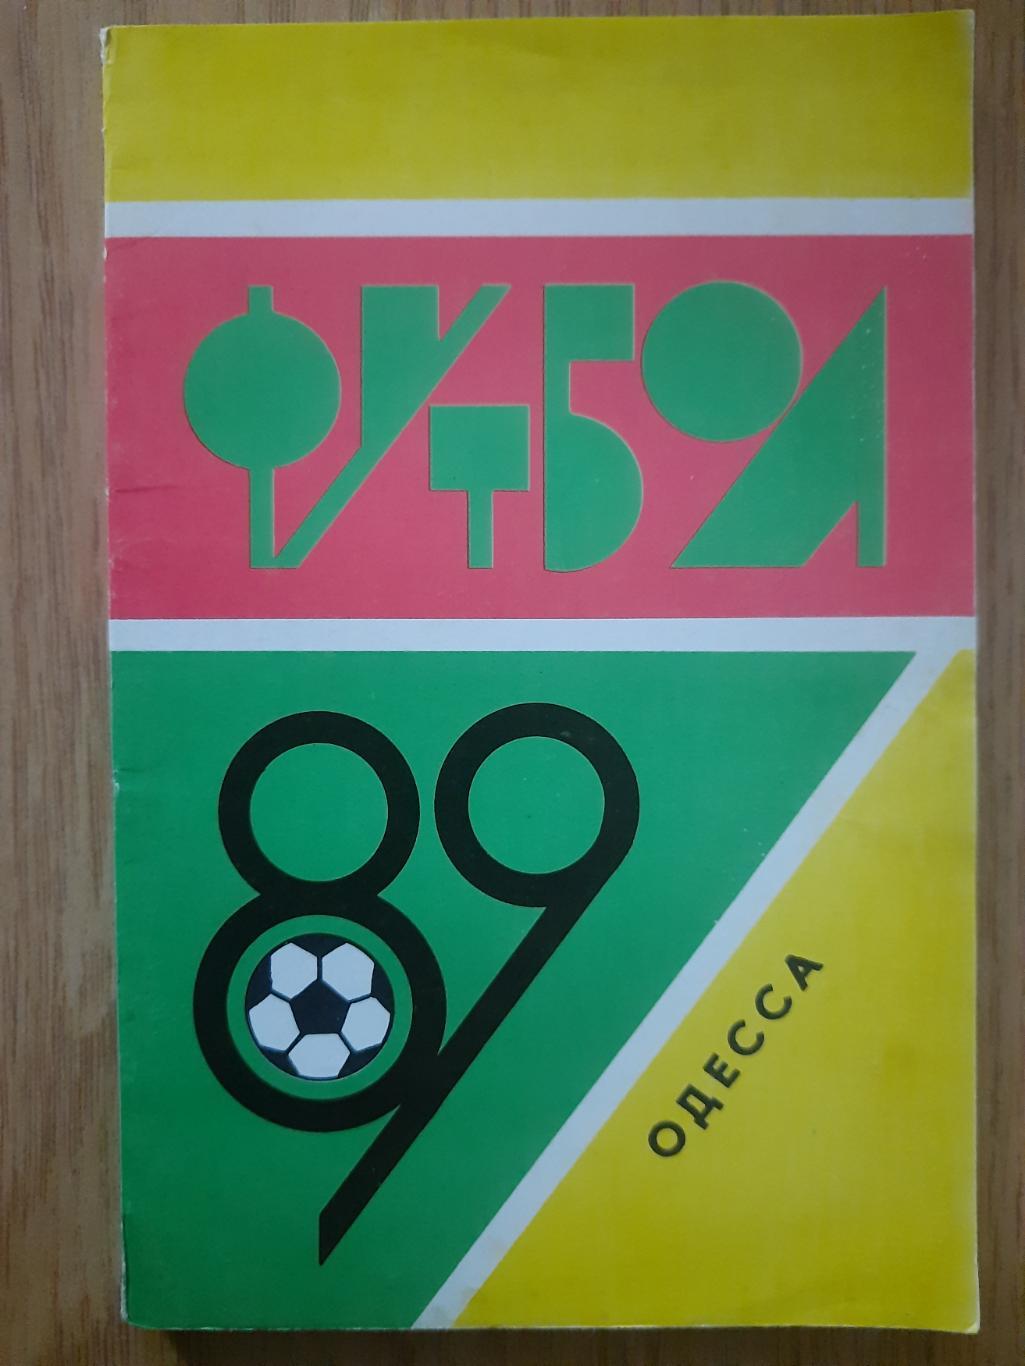 календарь-справочник Футбол 1989, Одесса.